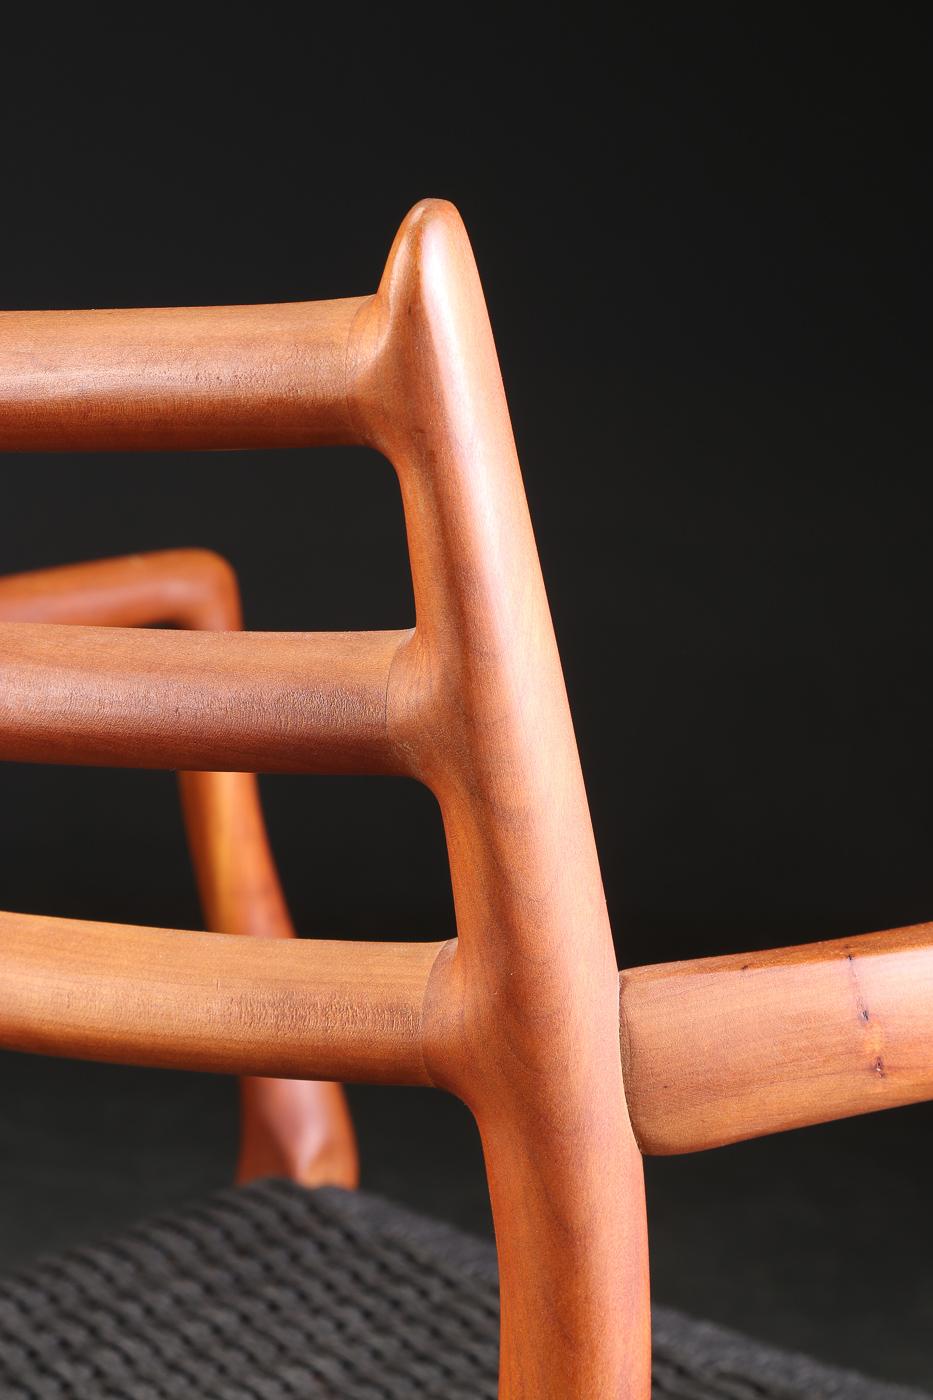 Der Esszimmerstuhl Modell 62 von Niels Otto Moller wird seit 1962 kontinuierlich hergestellt. Diese Stühle wurden im Zeitraum 2010-2020 aus Kirsche und schwarzem Holzfaserkabel hergestellt. 

Diese sechs Stühle sind in fast neuem Zustand.